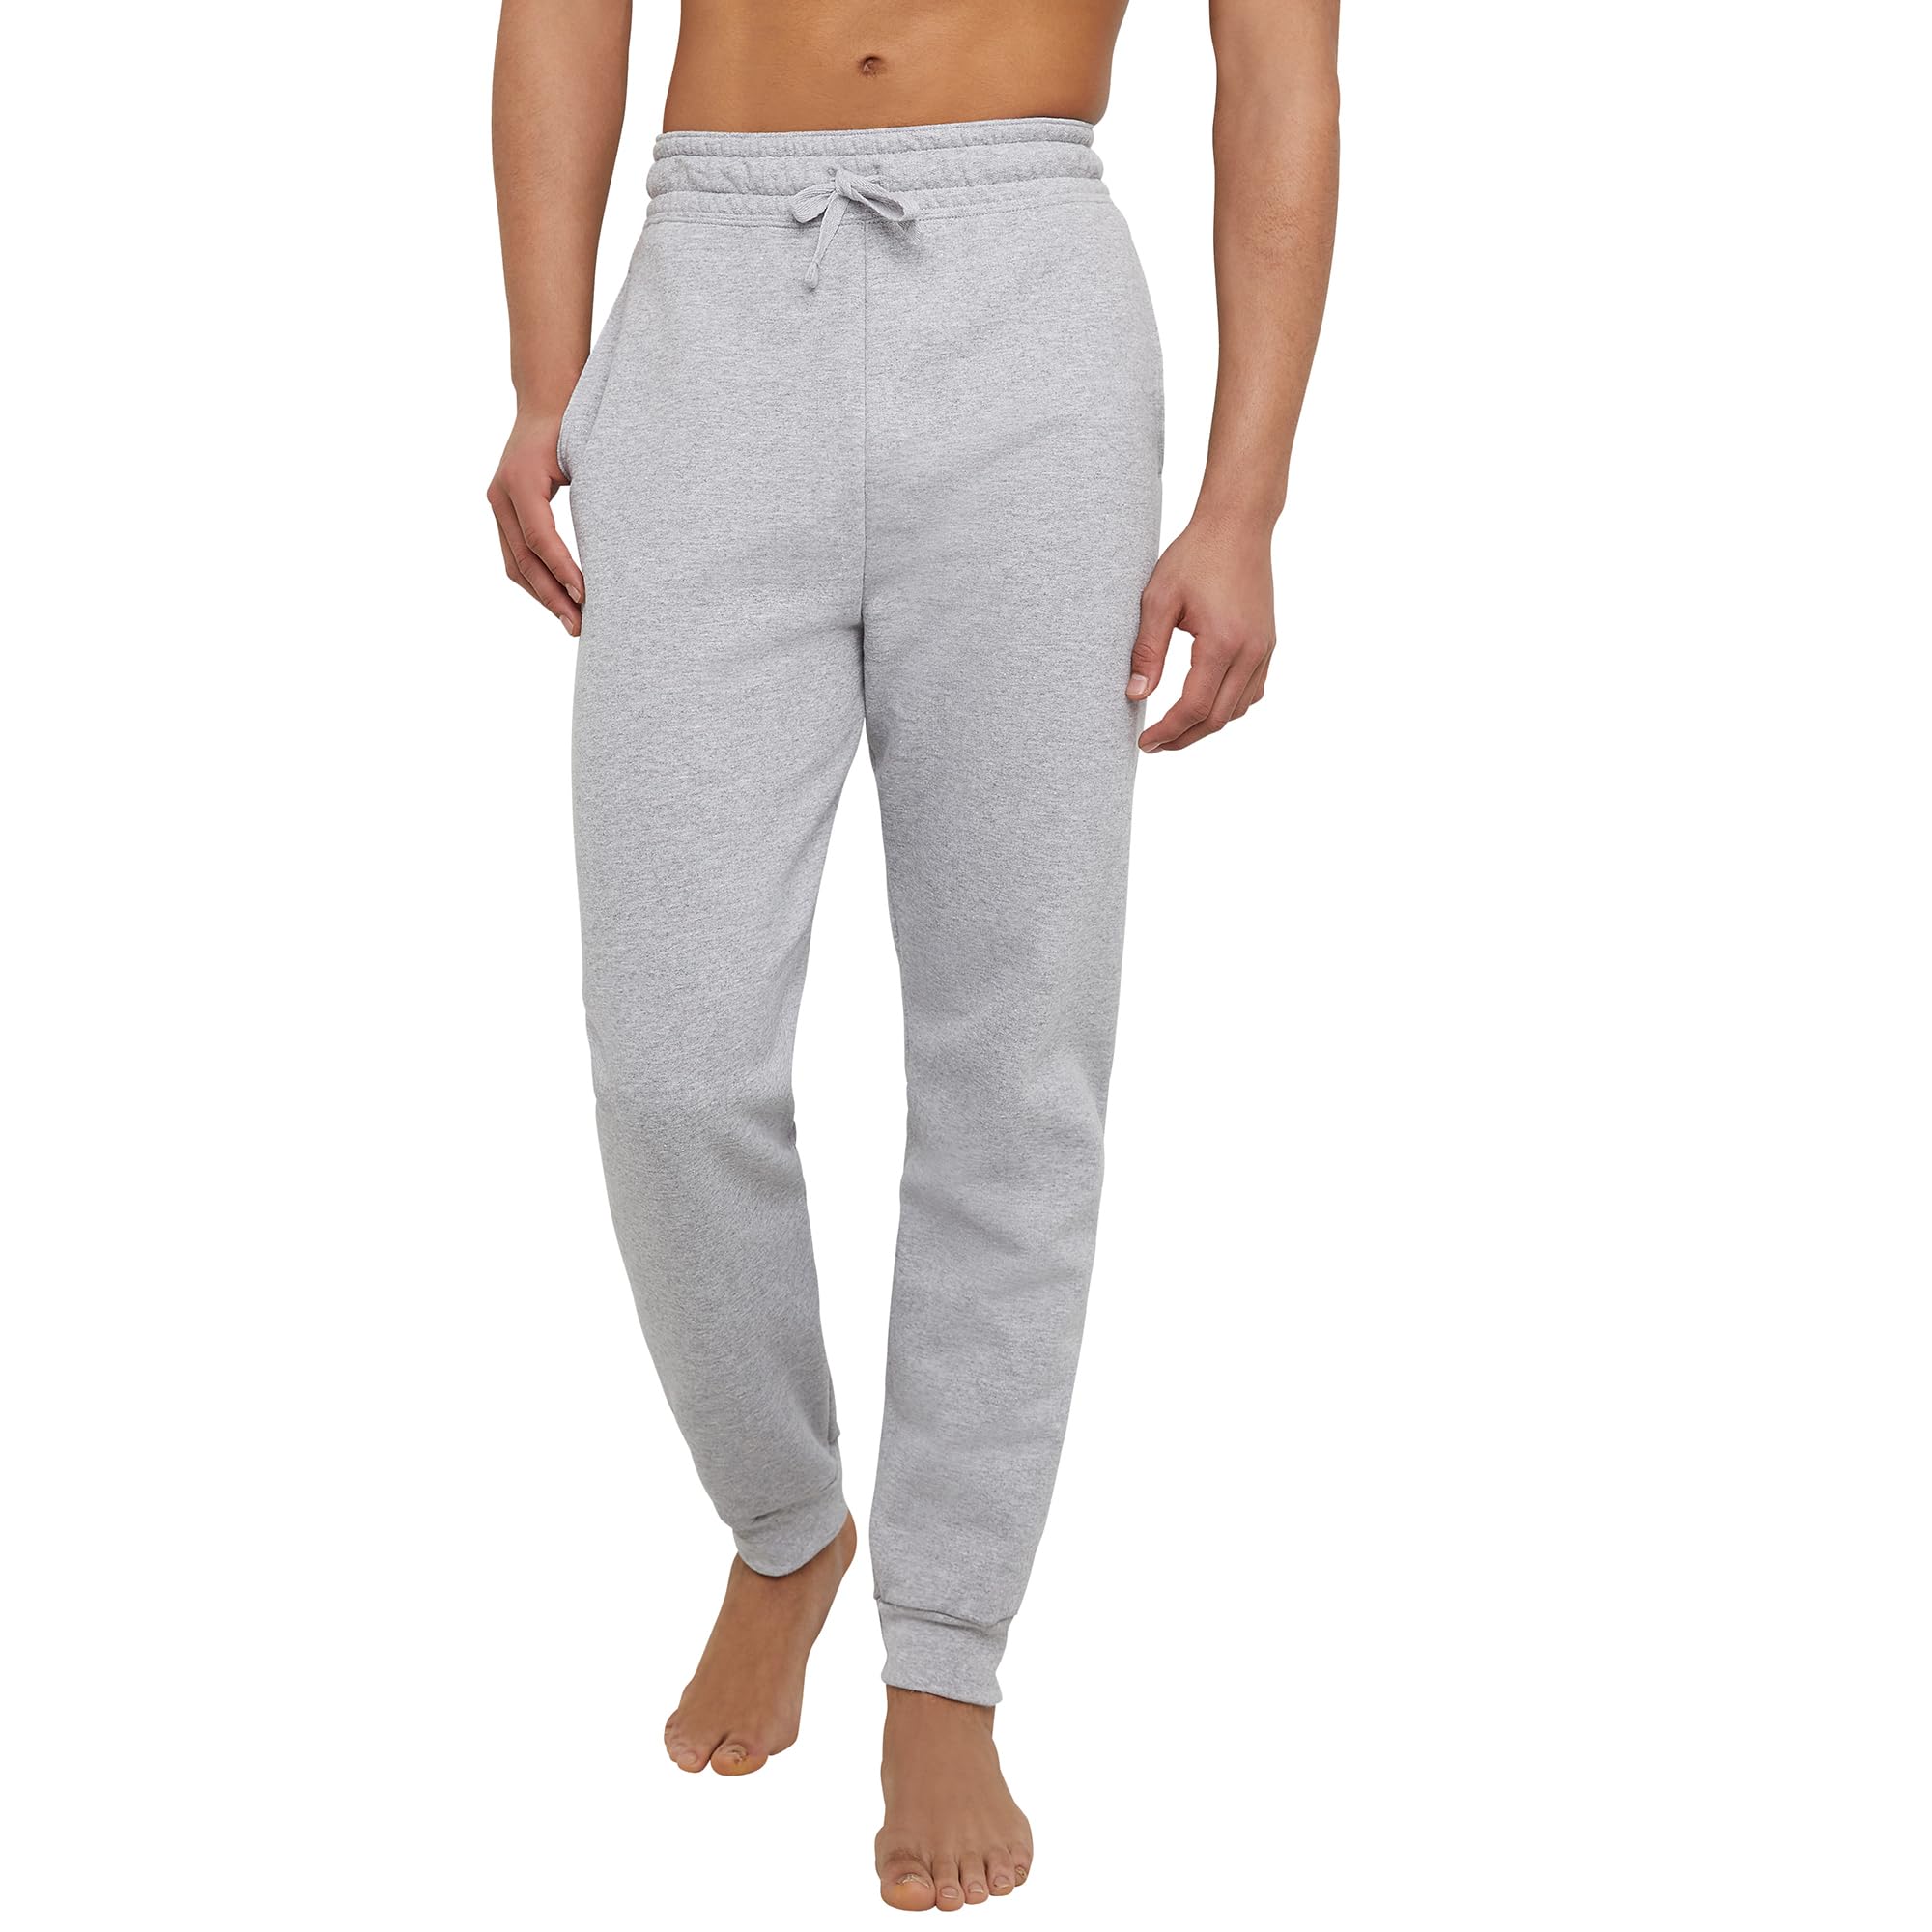 Hanes Men's EcoSmart Fleece Jogger Sweatpants (Light Steel, Size S-XXL) $11.19 + Free Shipping w/ Prime or on $35+